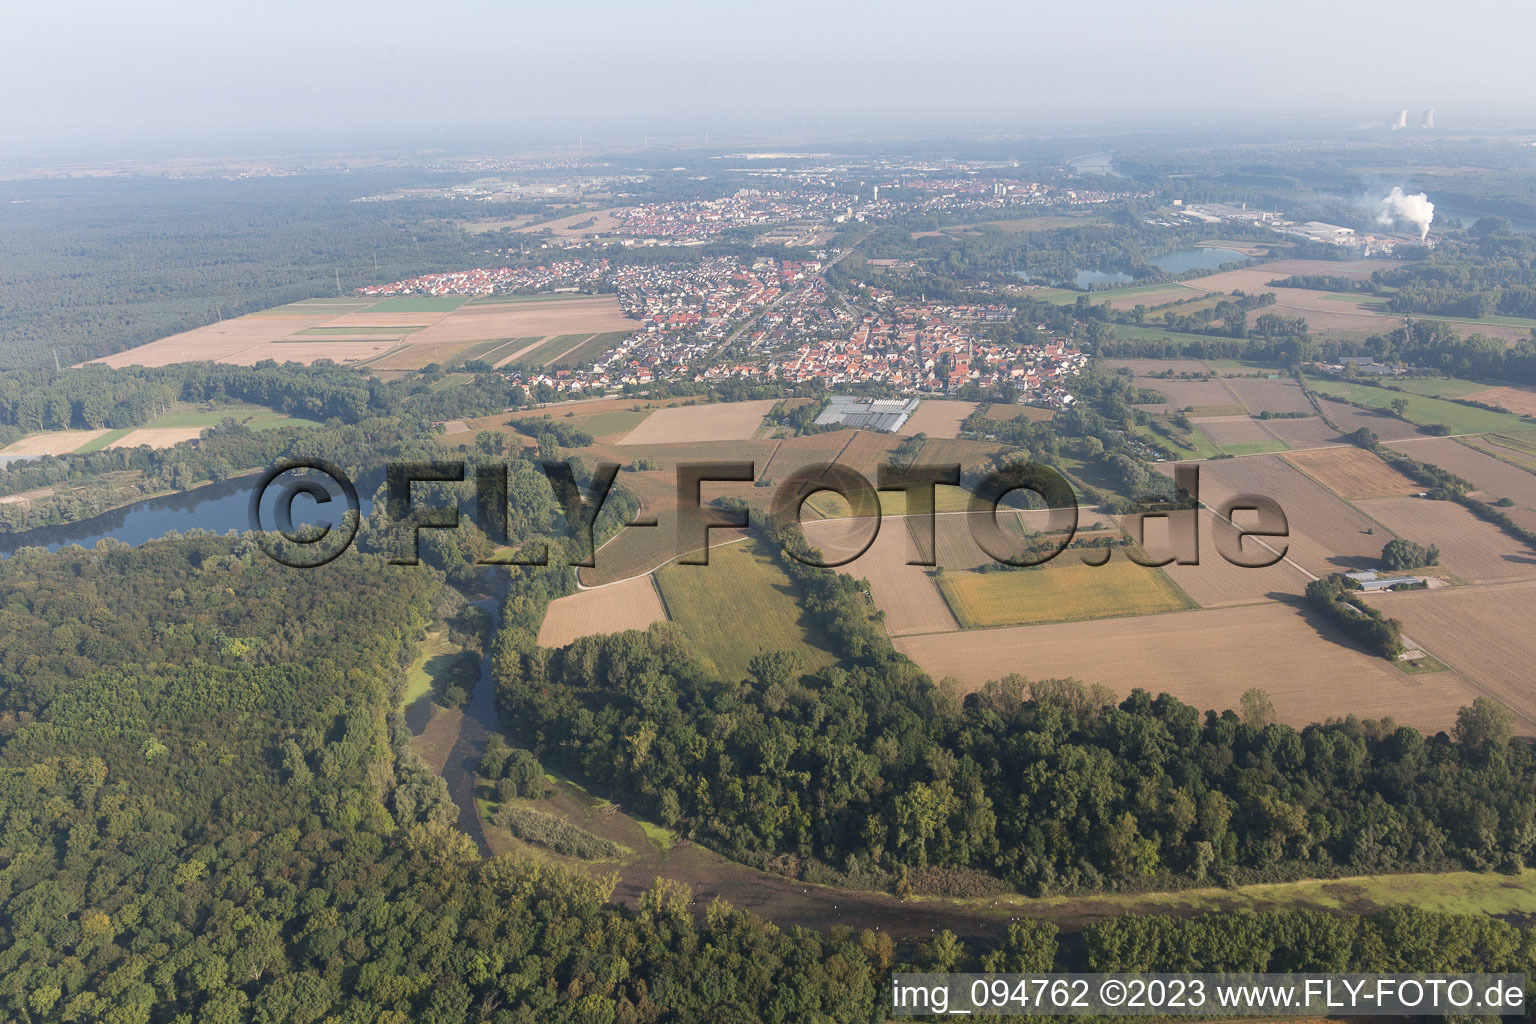 Ortsteil Sondernheim in Germersheim im Bundesland Rheinland-Pfalz, Deutschland von einer Drohne aus